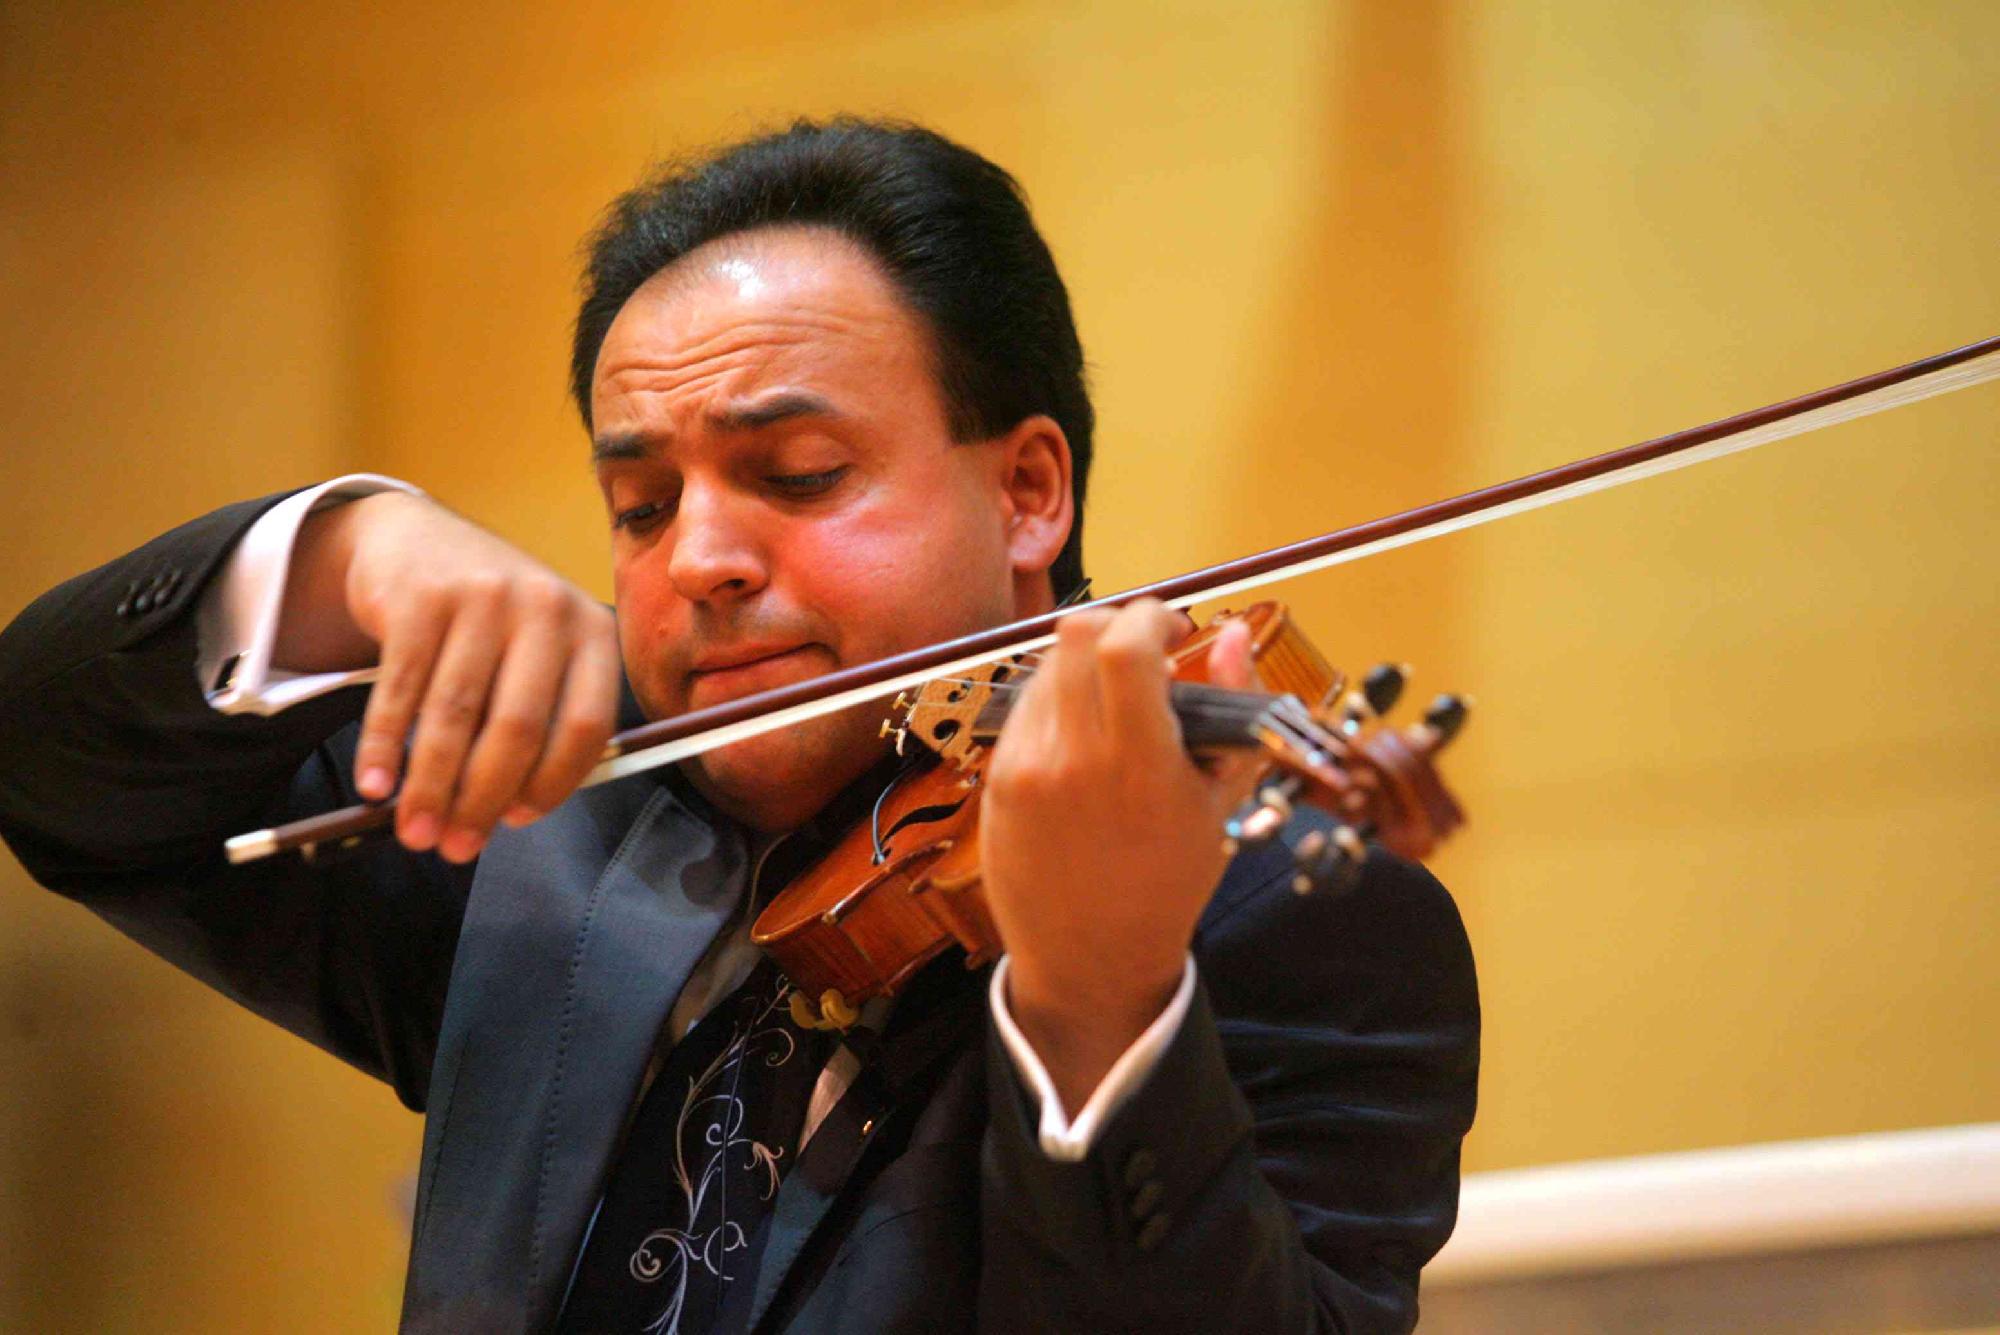 A menekülni kényszerülők megsegítéséért hegedűl jótékonysági koncertjén Mága Zoltán